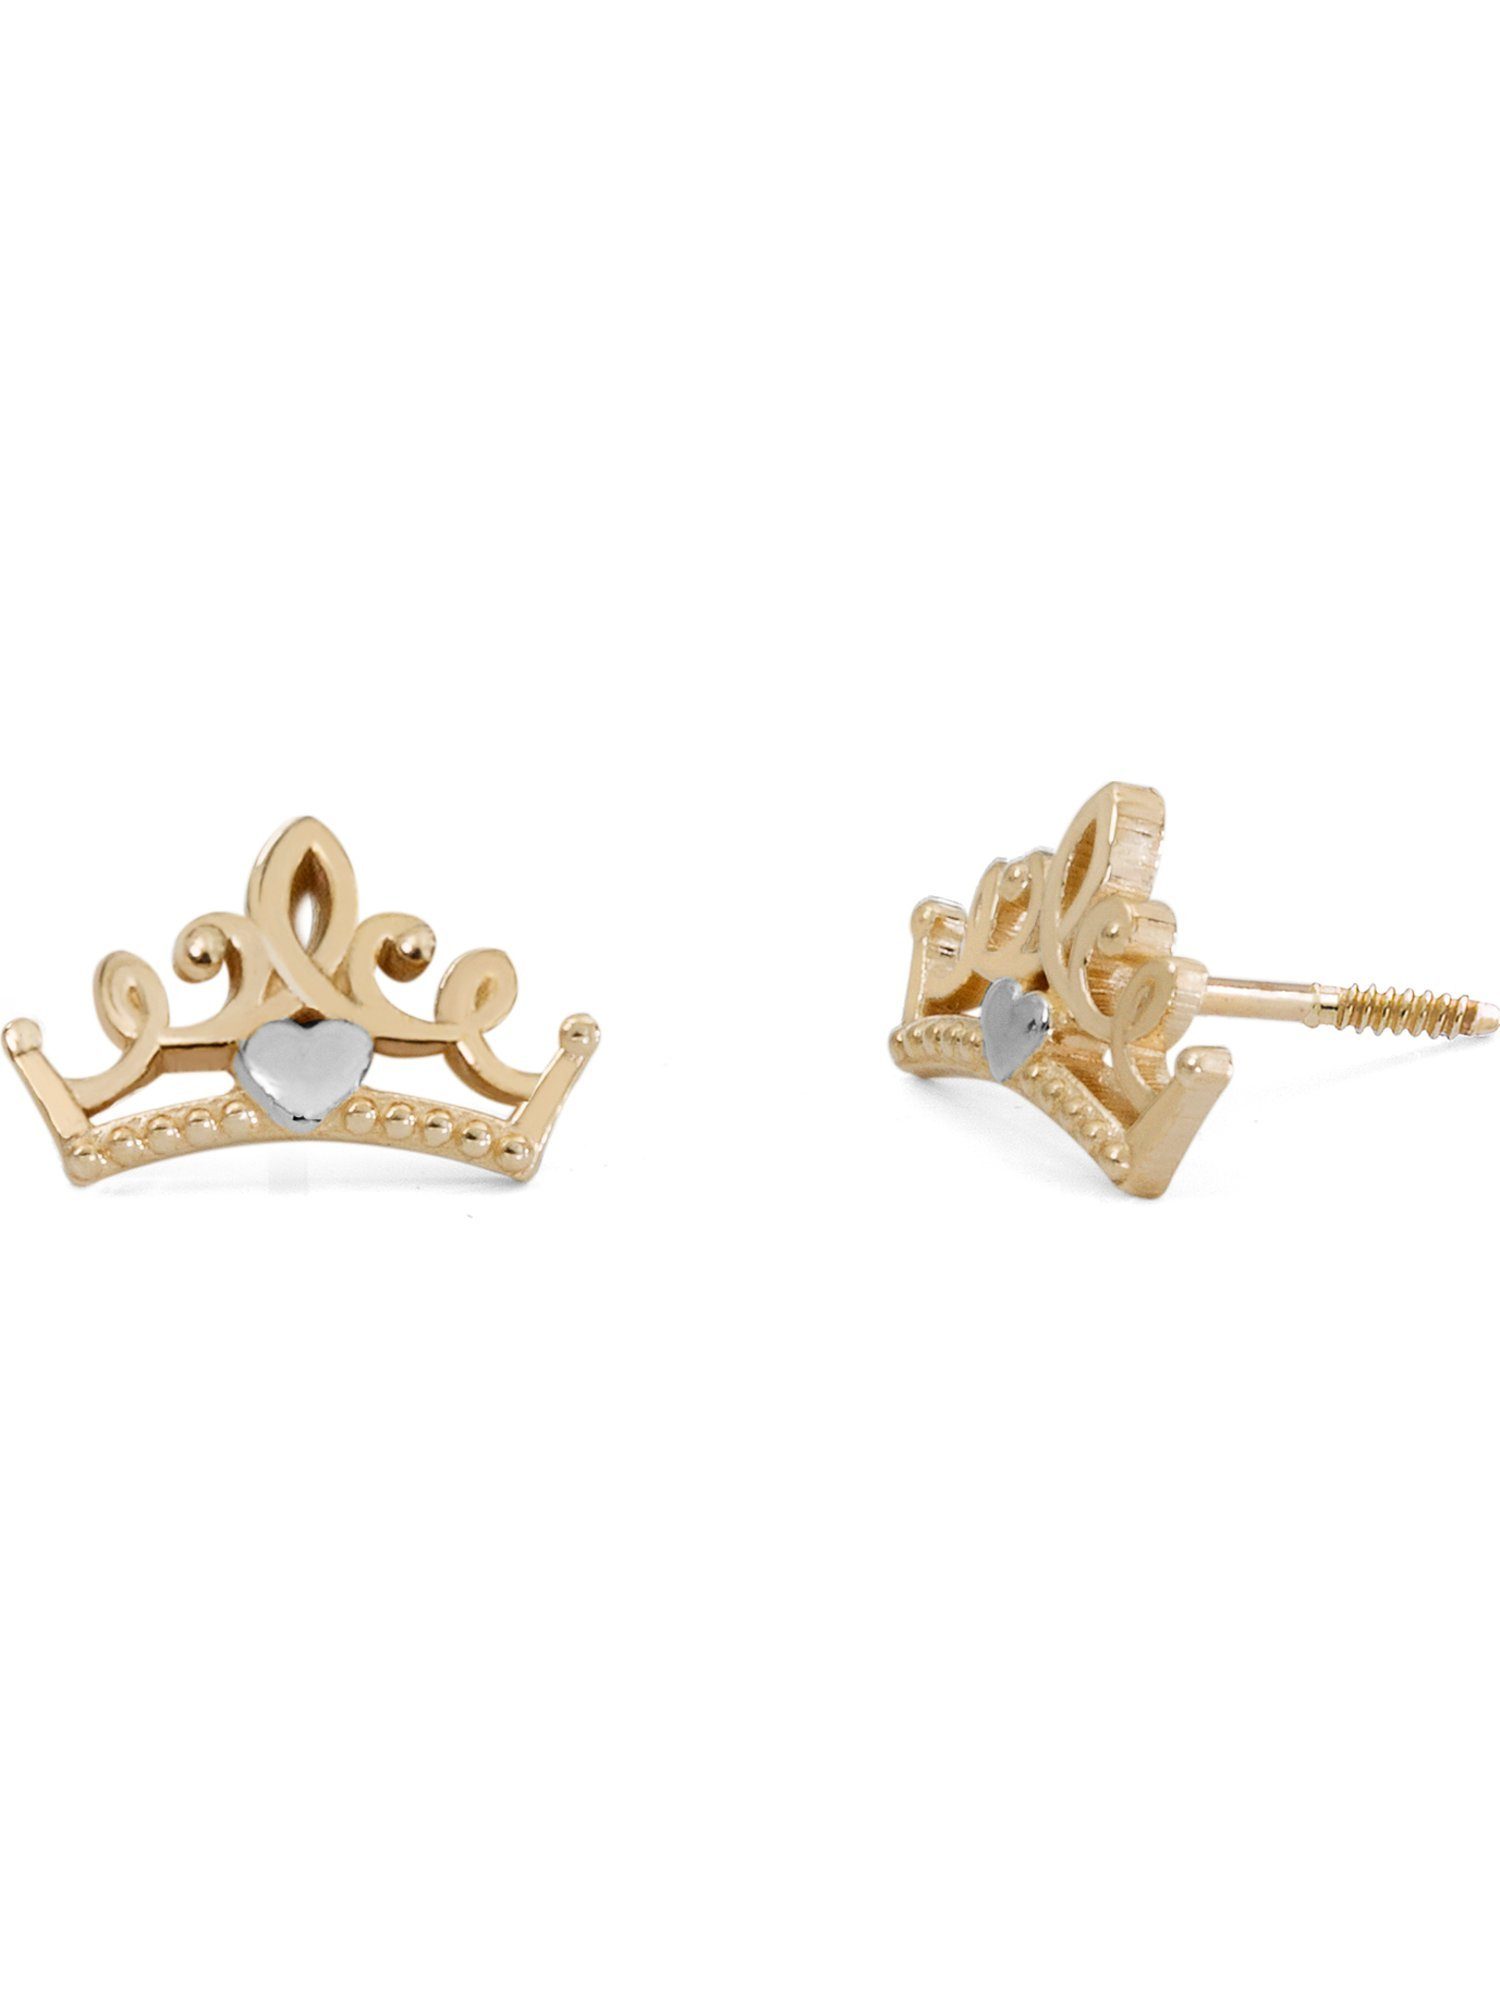 Paar Mädchen-Kinderohrring Ohrhänger DISNEY 375er Gelbgold Disney Jewelry